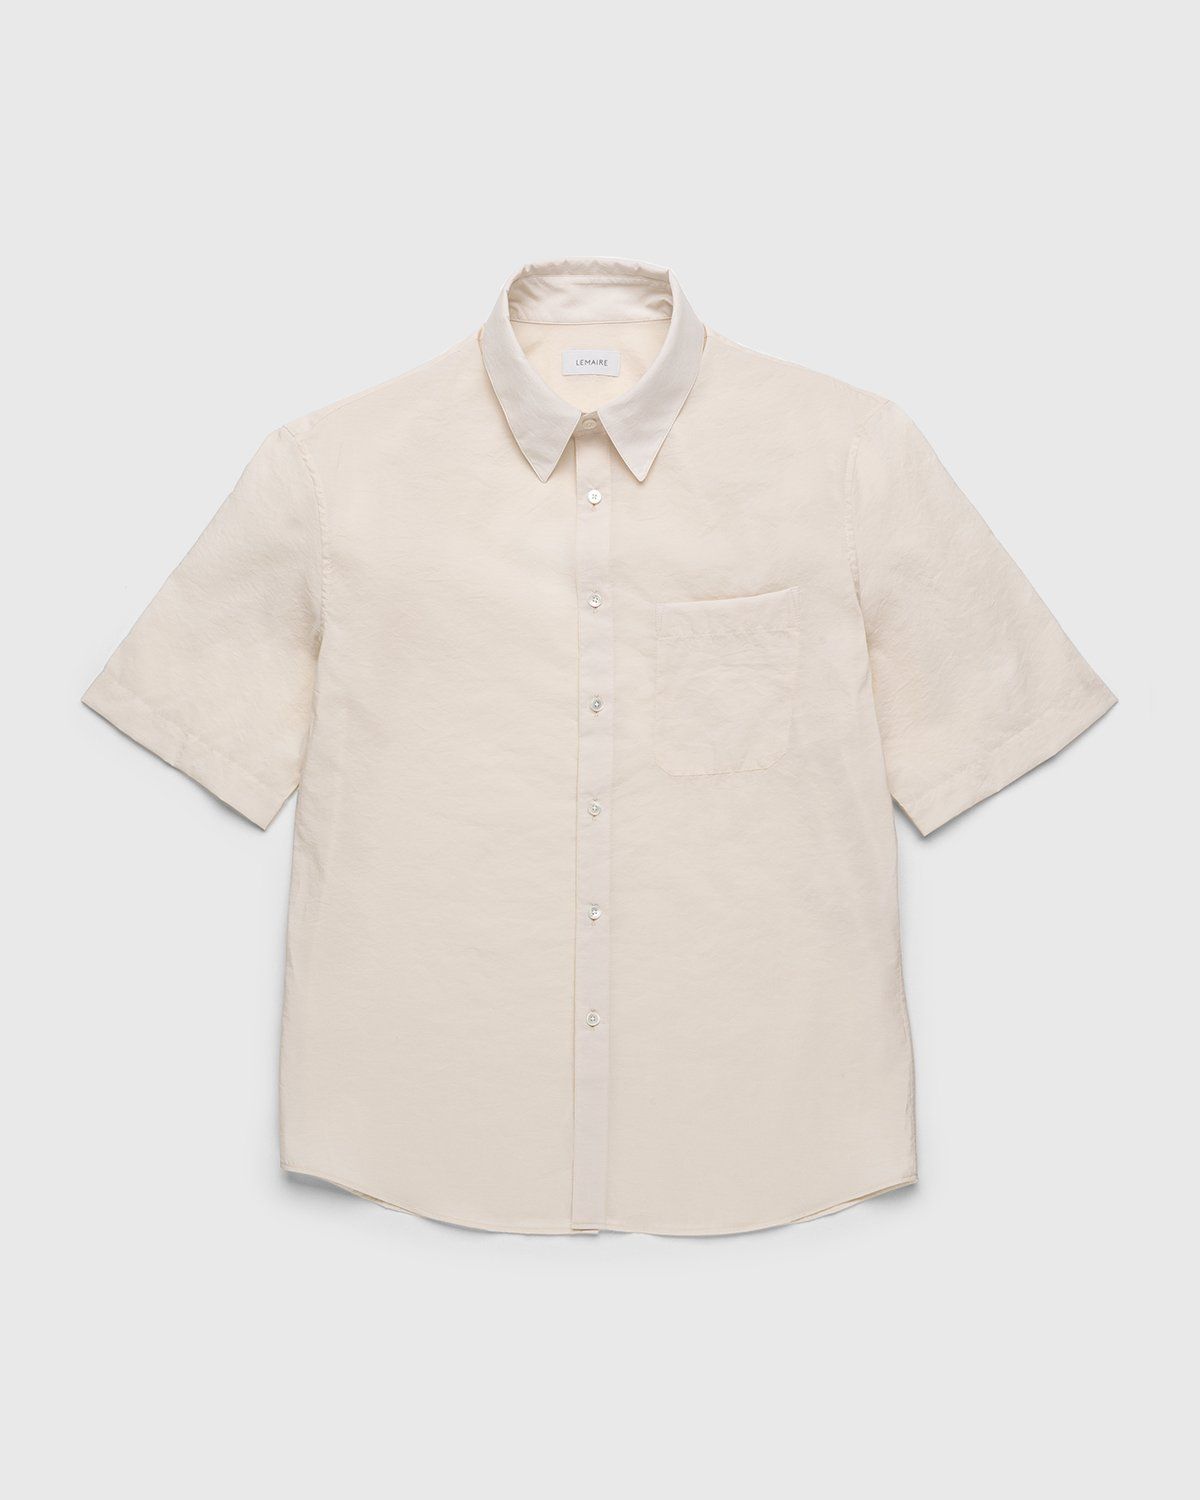 Lemaire – Regular Collar Short Sleeve Shirt Ivory - Shirts - White - Image 1